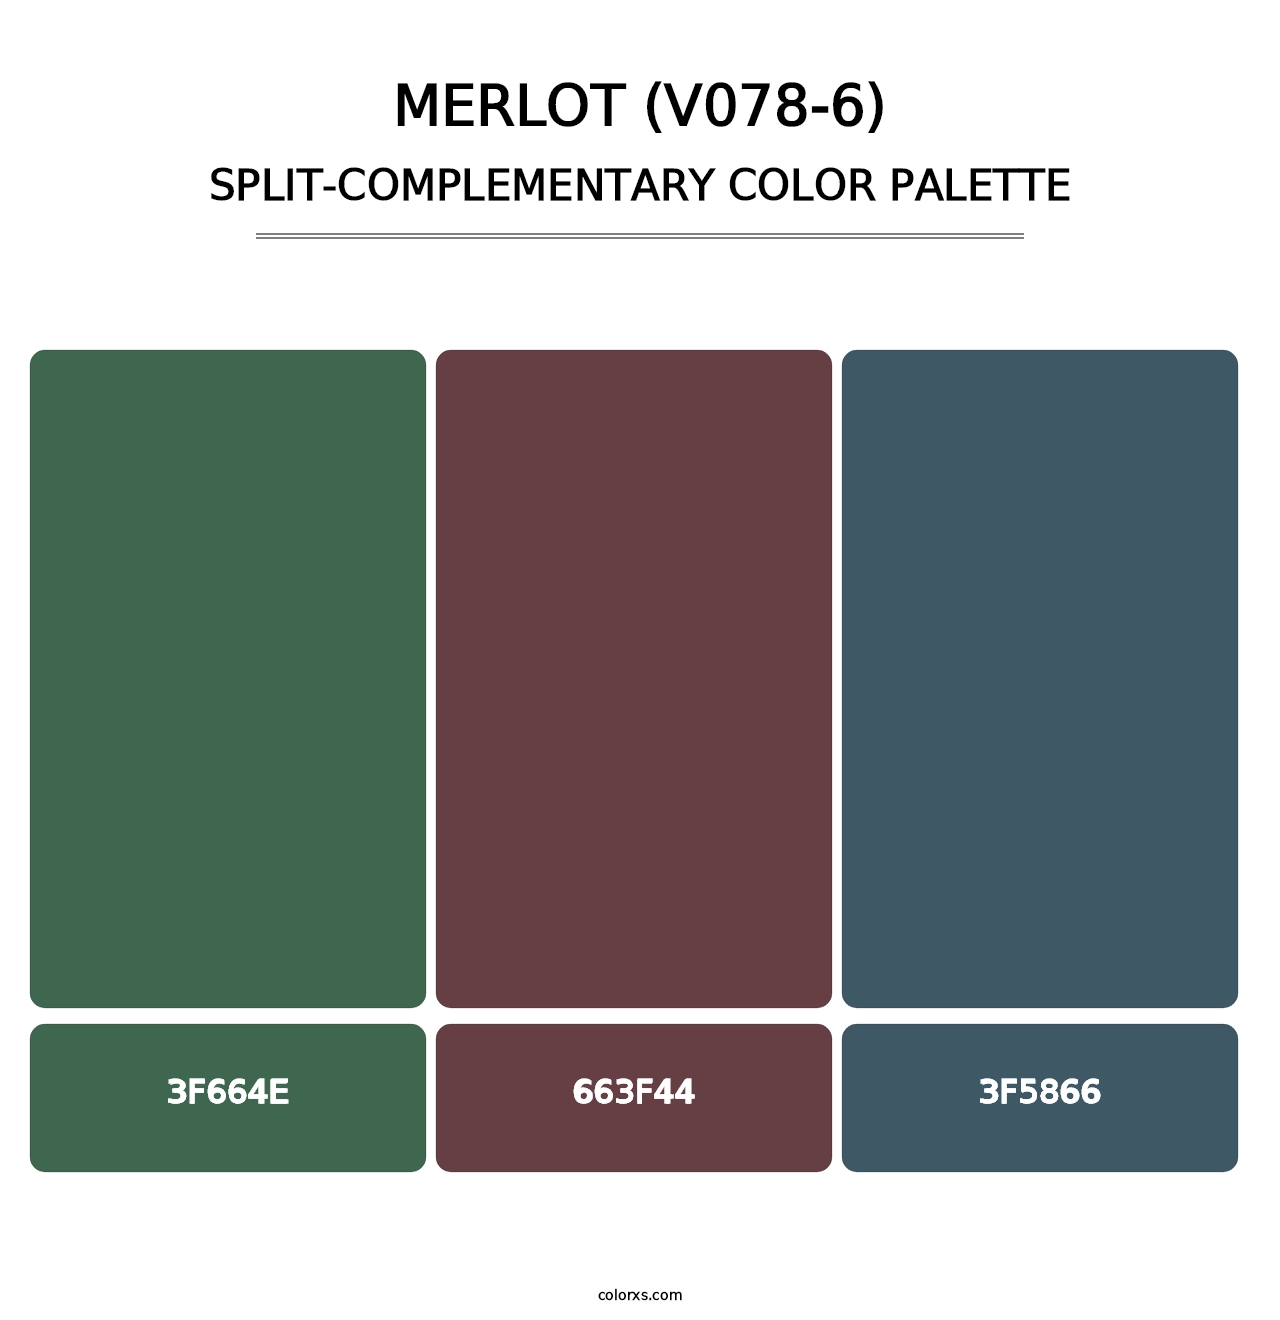 Merlot (V078-6) - Split-Complementary Color Palette